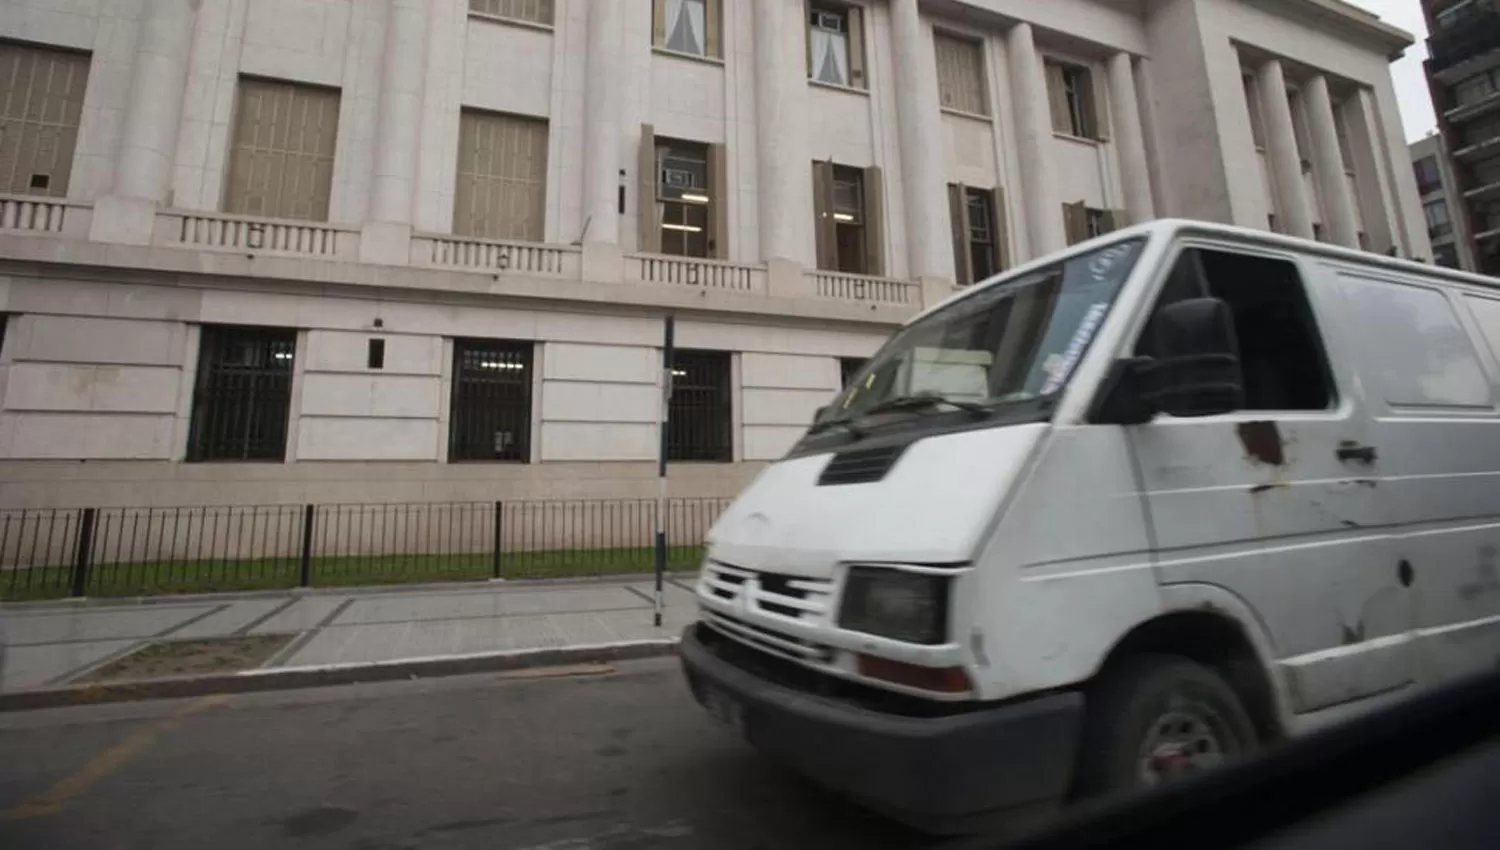 EN TUCUMÁN. Una camioneta blanca pasa frente a Tribunales. ARCHIVO / DIEGO ARÁOZ